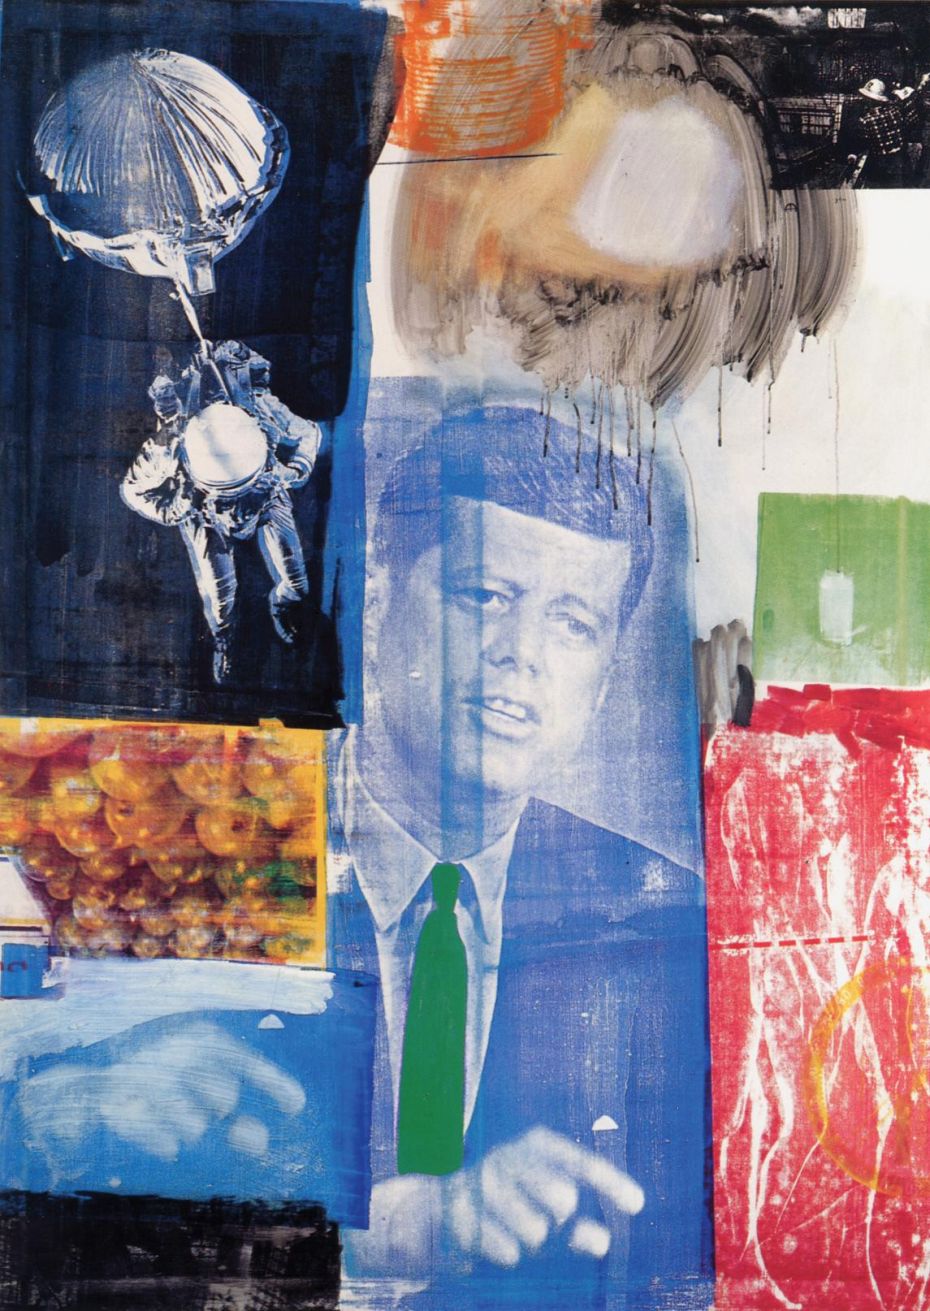 Robert Rauschenberg, 'Retroactive 1', 1963, Oil and silkscreen on canvas, 84 × 60 in.